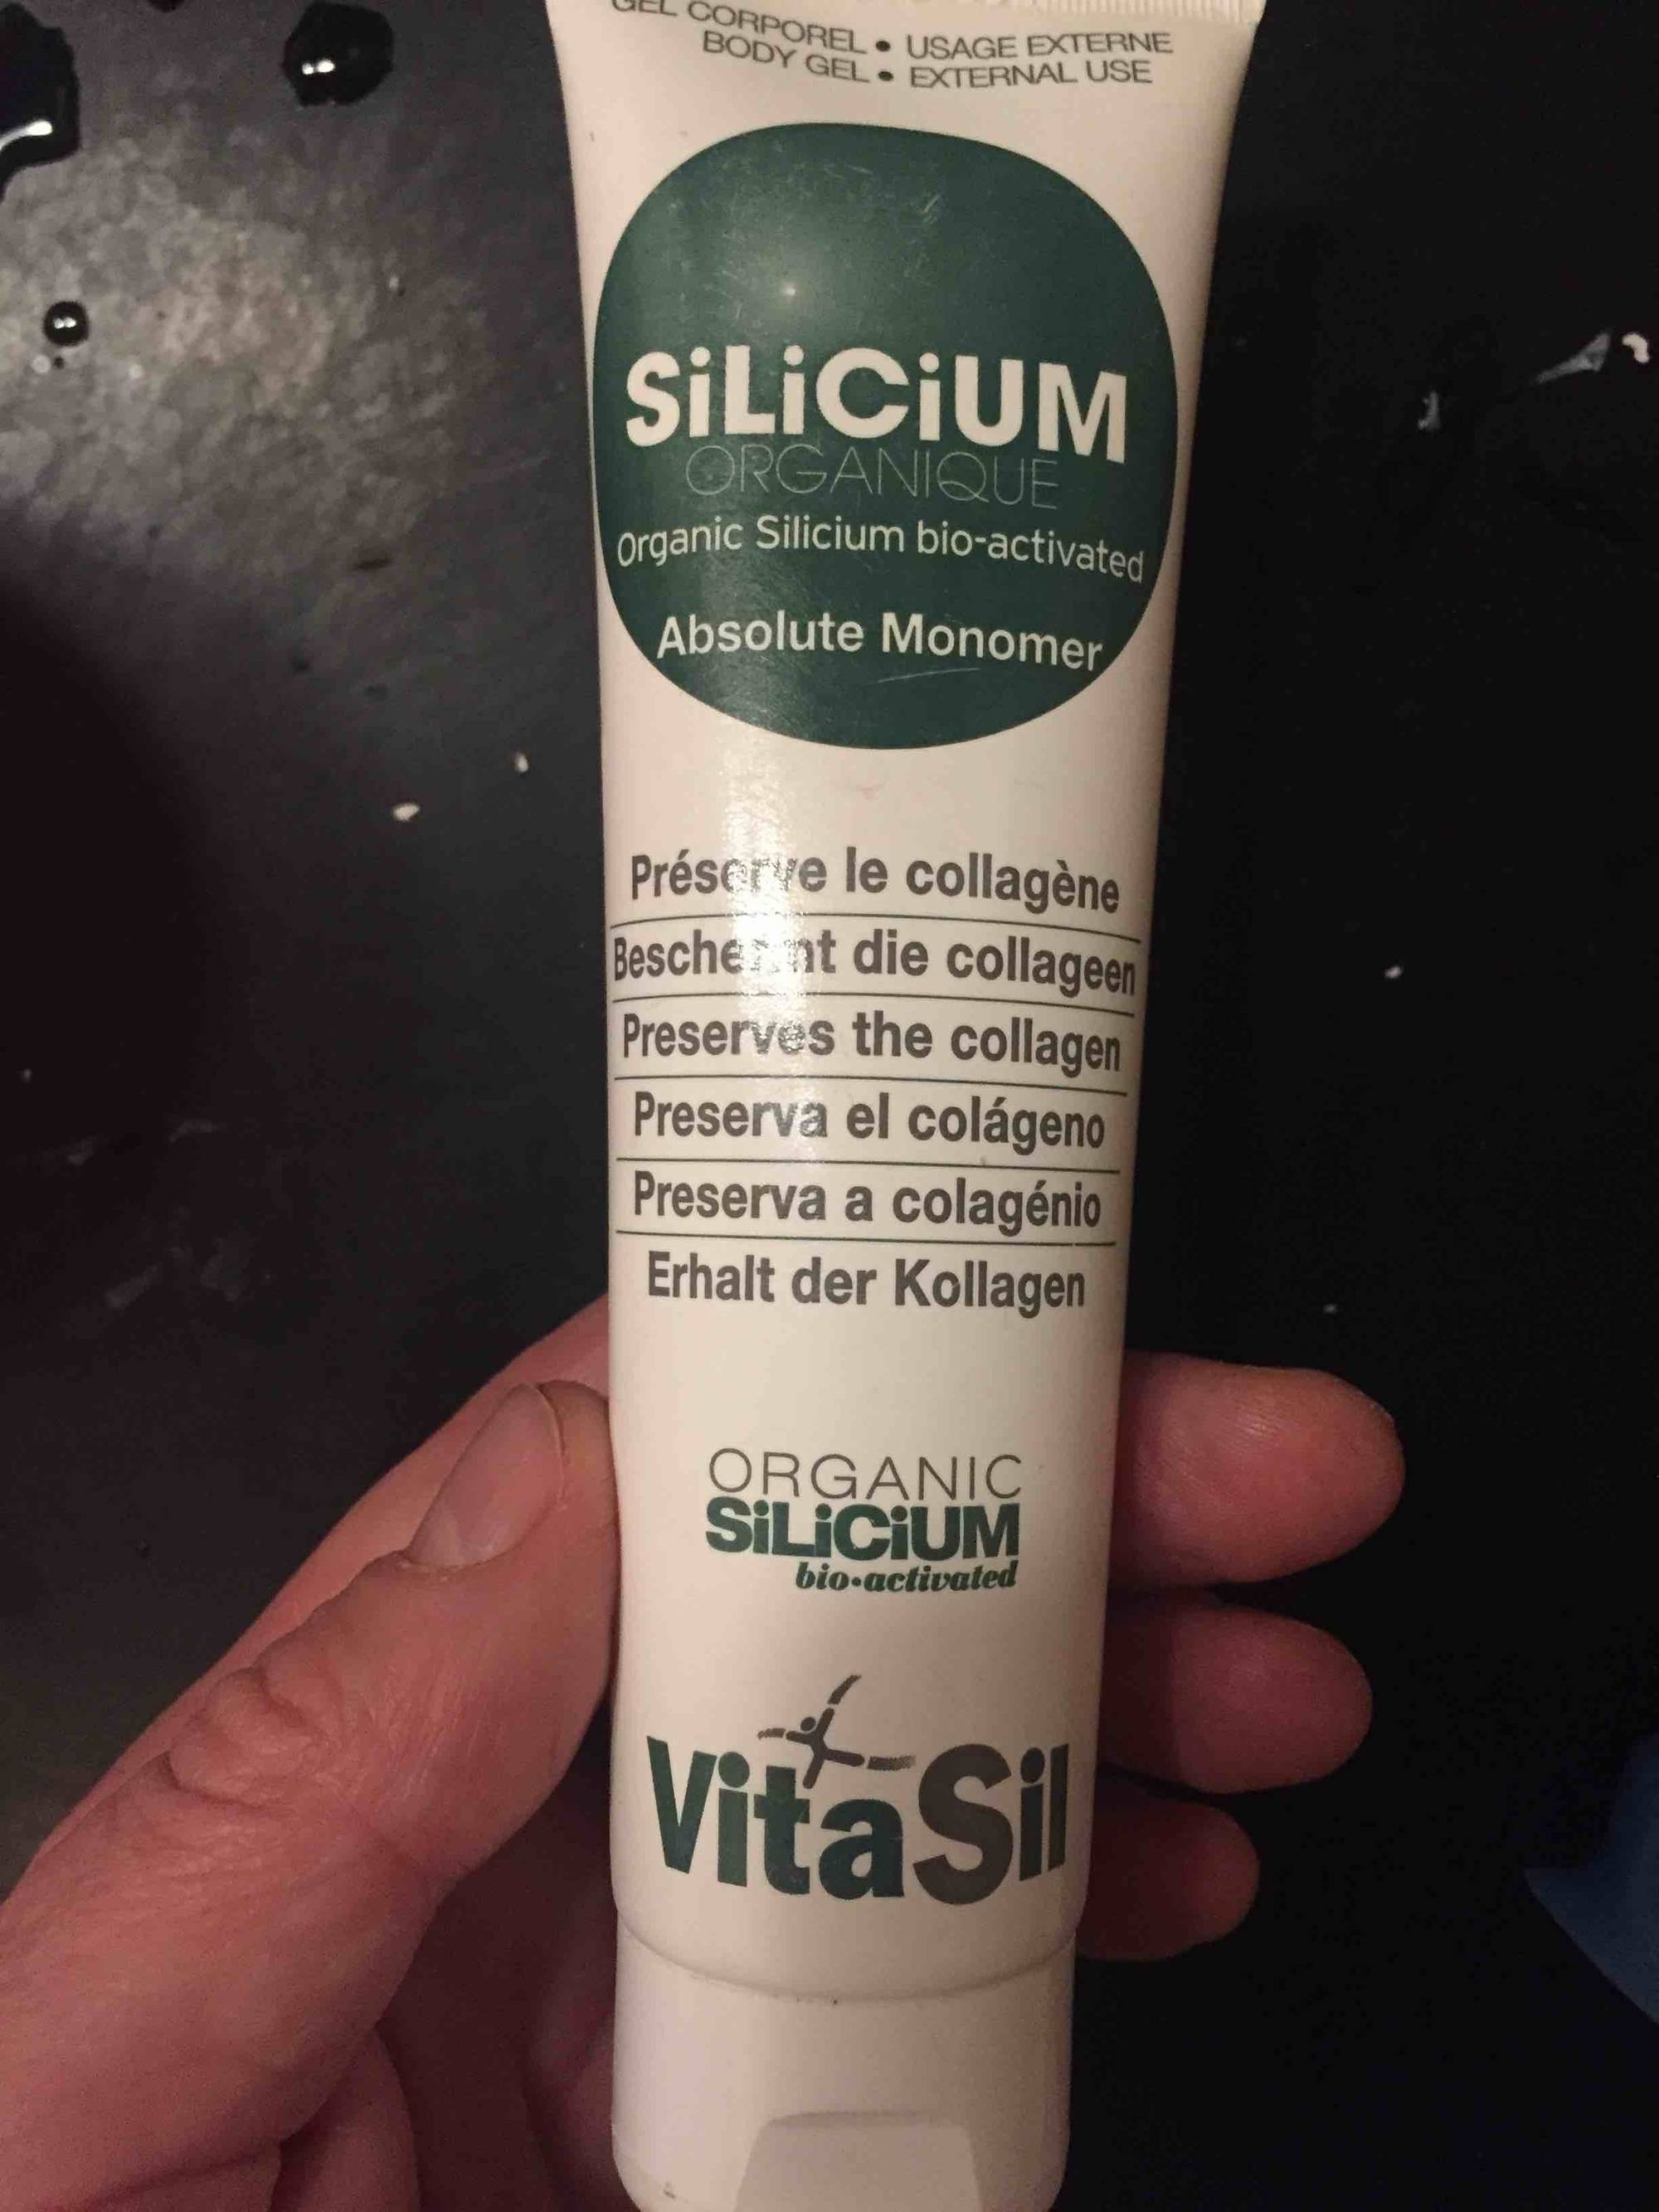 VITASIL - Silicium organique - Absolute Monomer